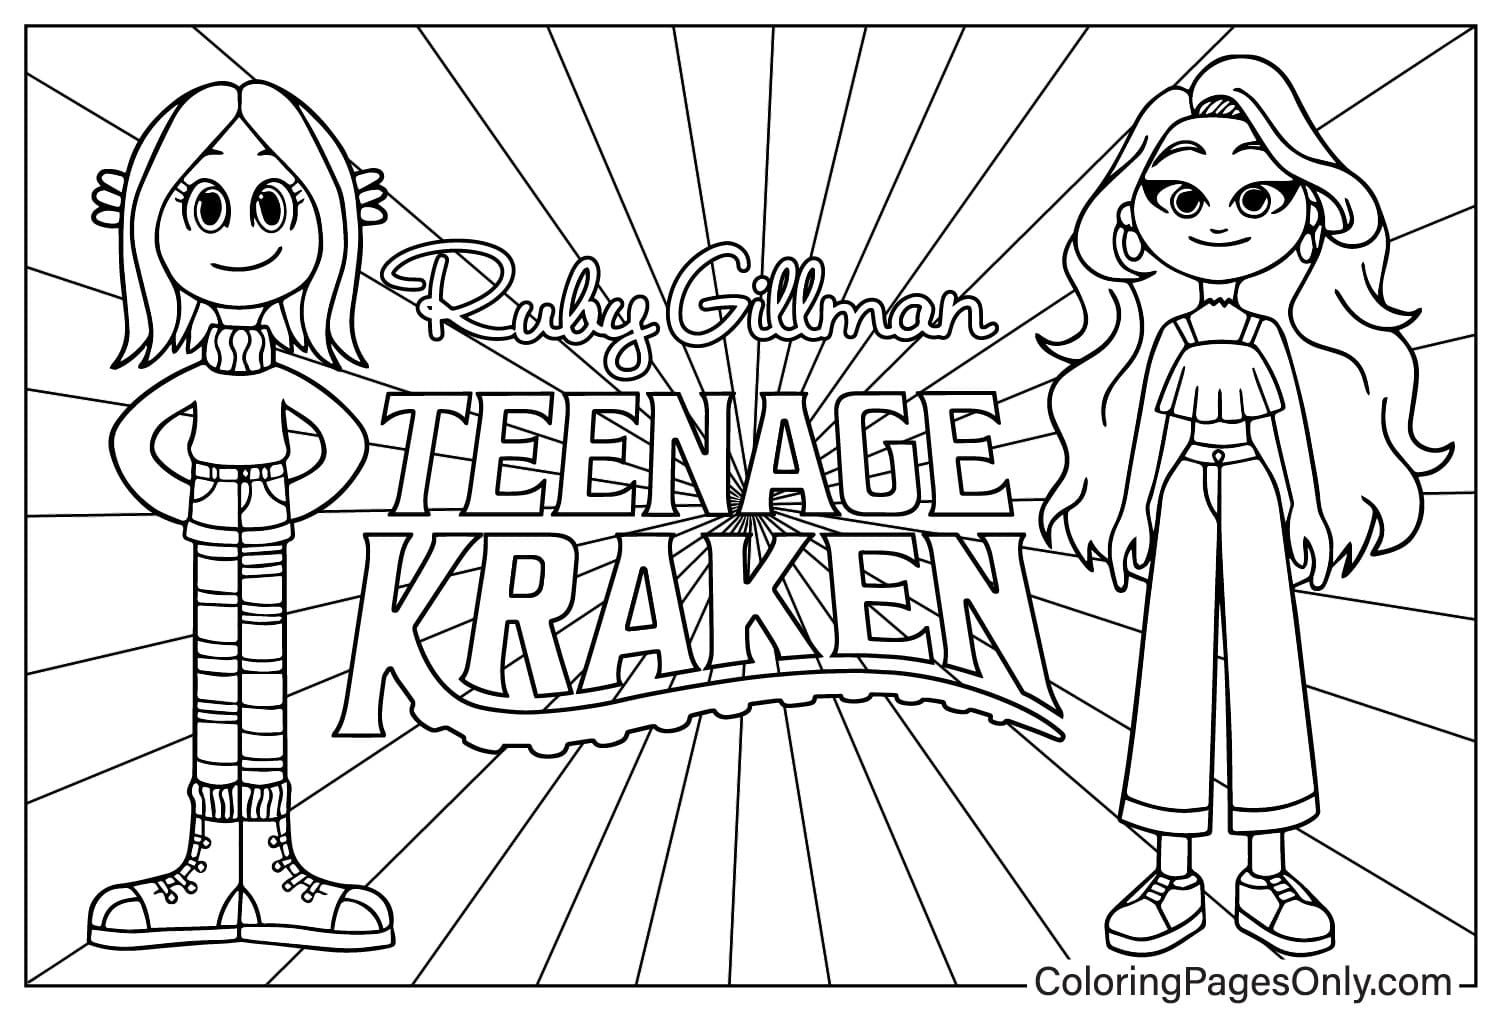 Página para colorear de Ruby Gillman y Chelsea de Ruby Gillman Teenage Kraken